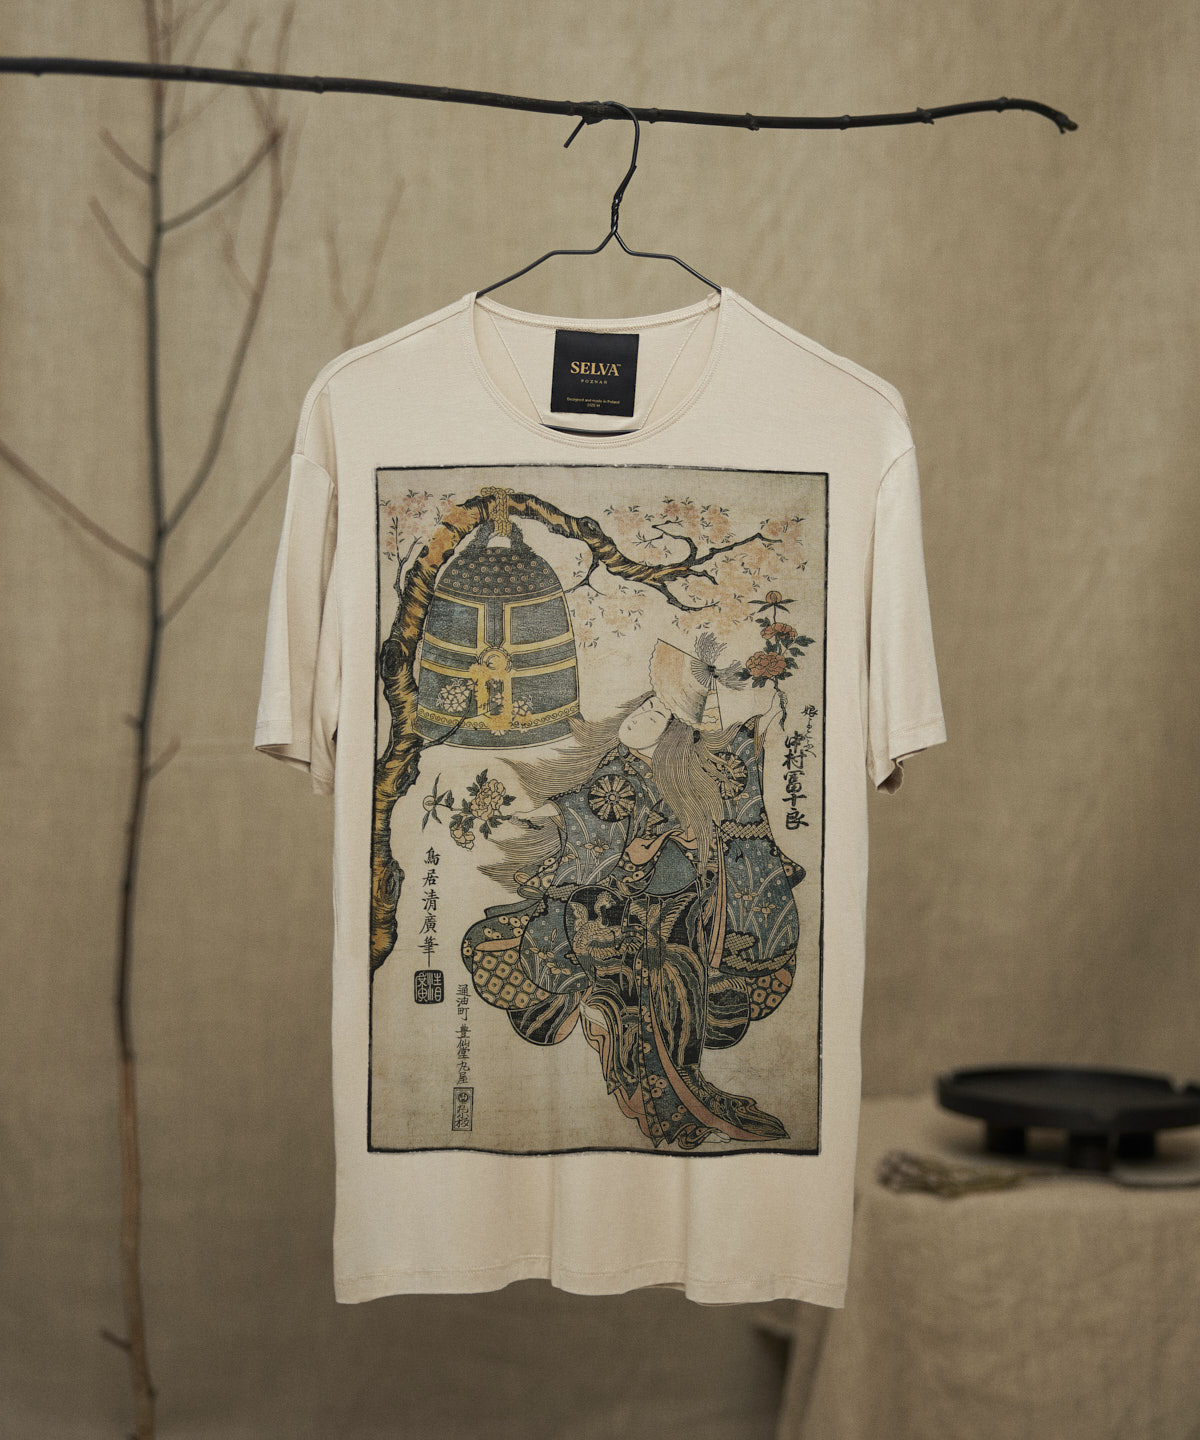 Torii Kiyohiro no.61 hummus t-shirt men